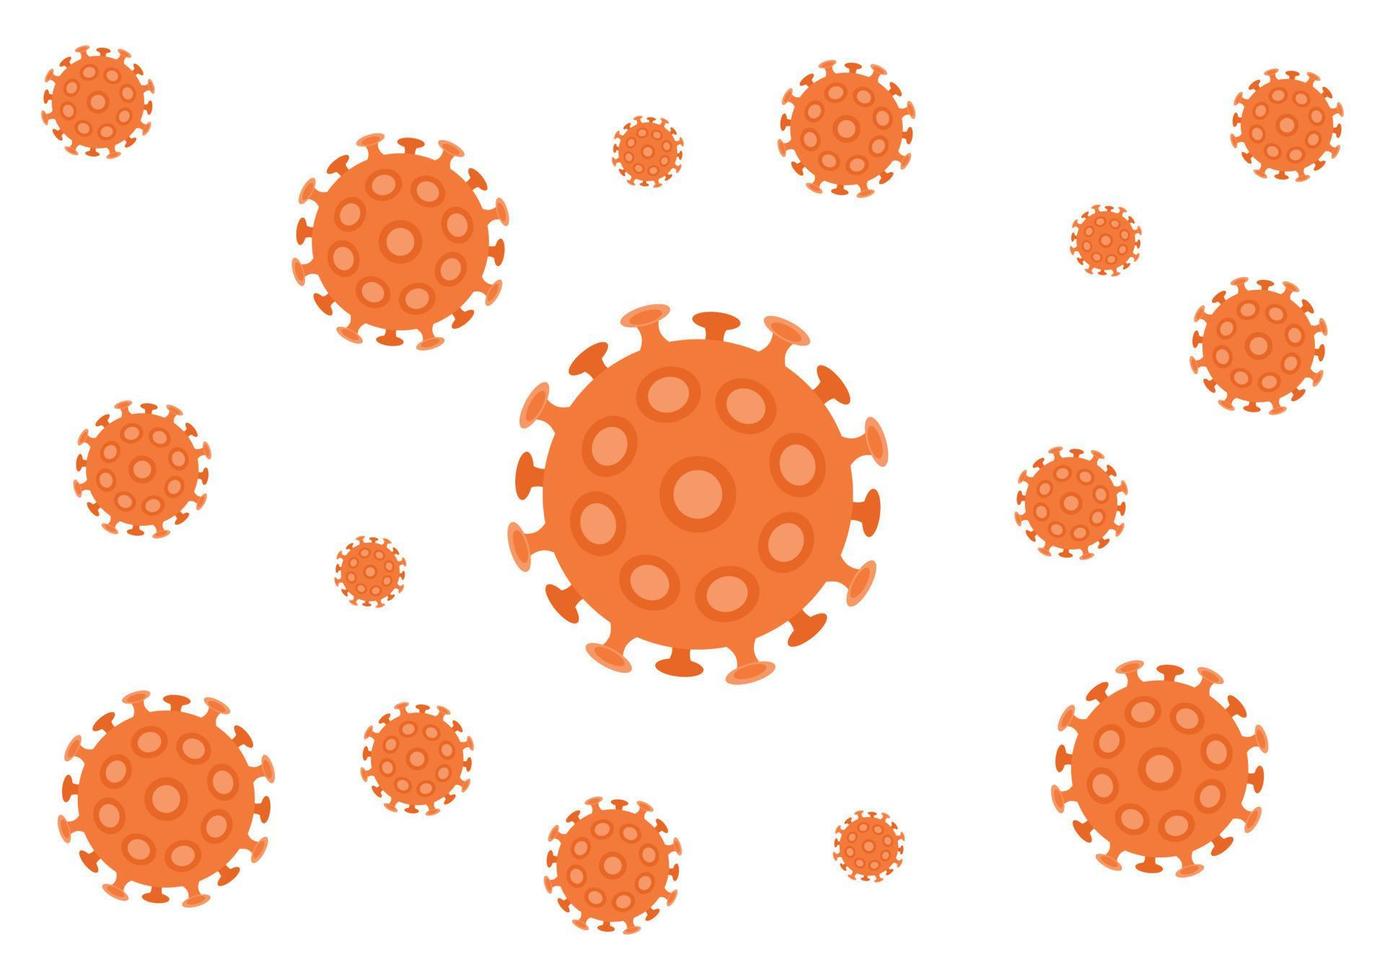 covid19. coronavirus - 2019. virus, pandemia. medico per l'infezione da covid-19 vettore